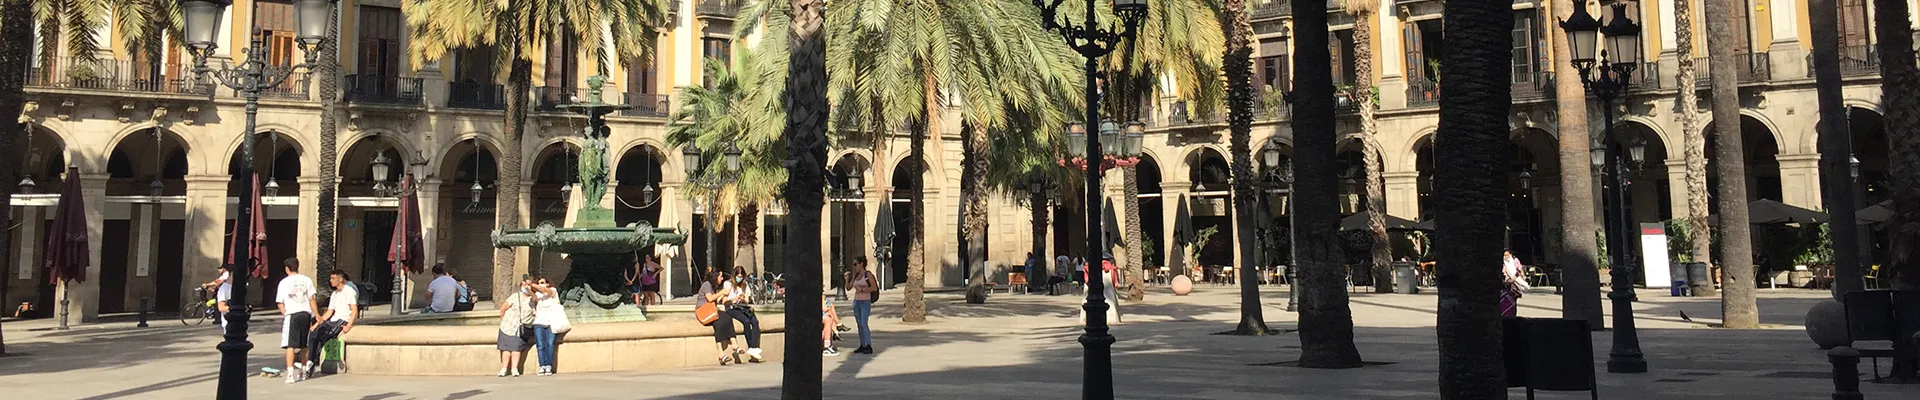 quartier gothique de barcelone